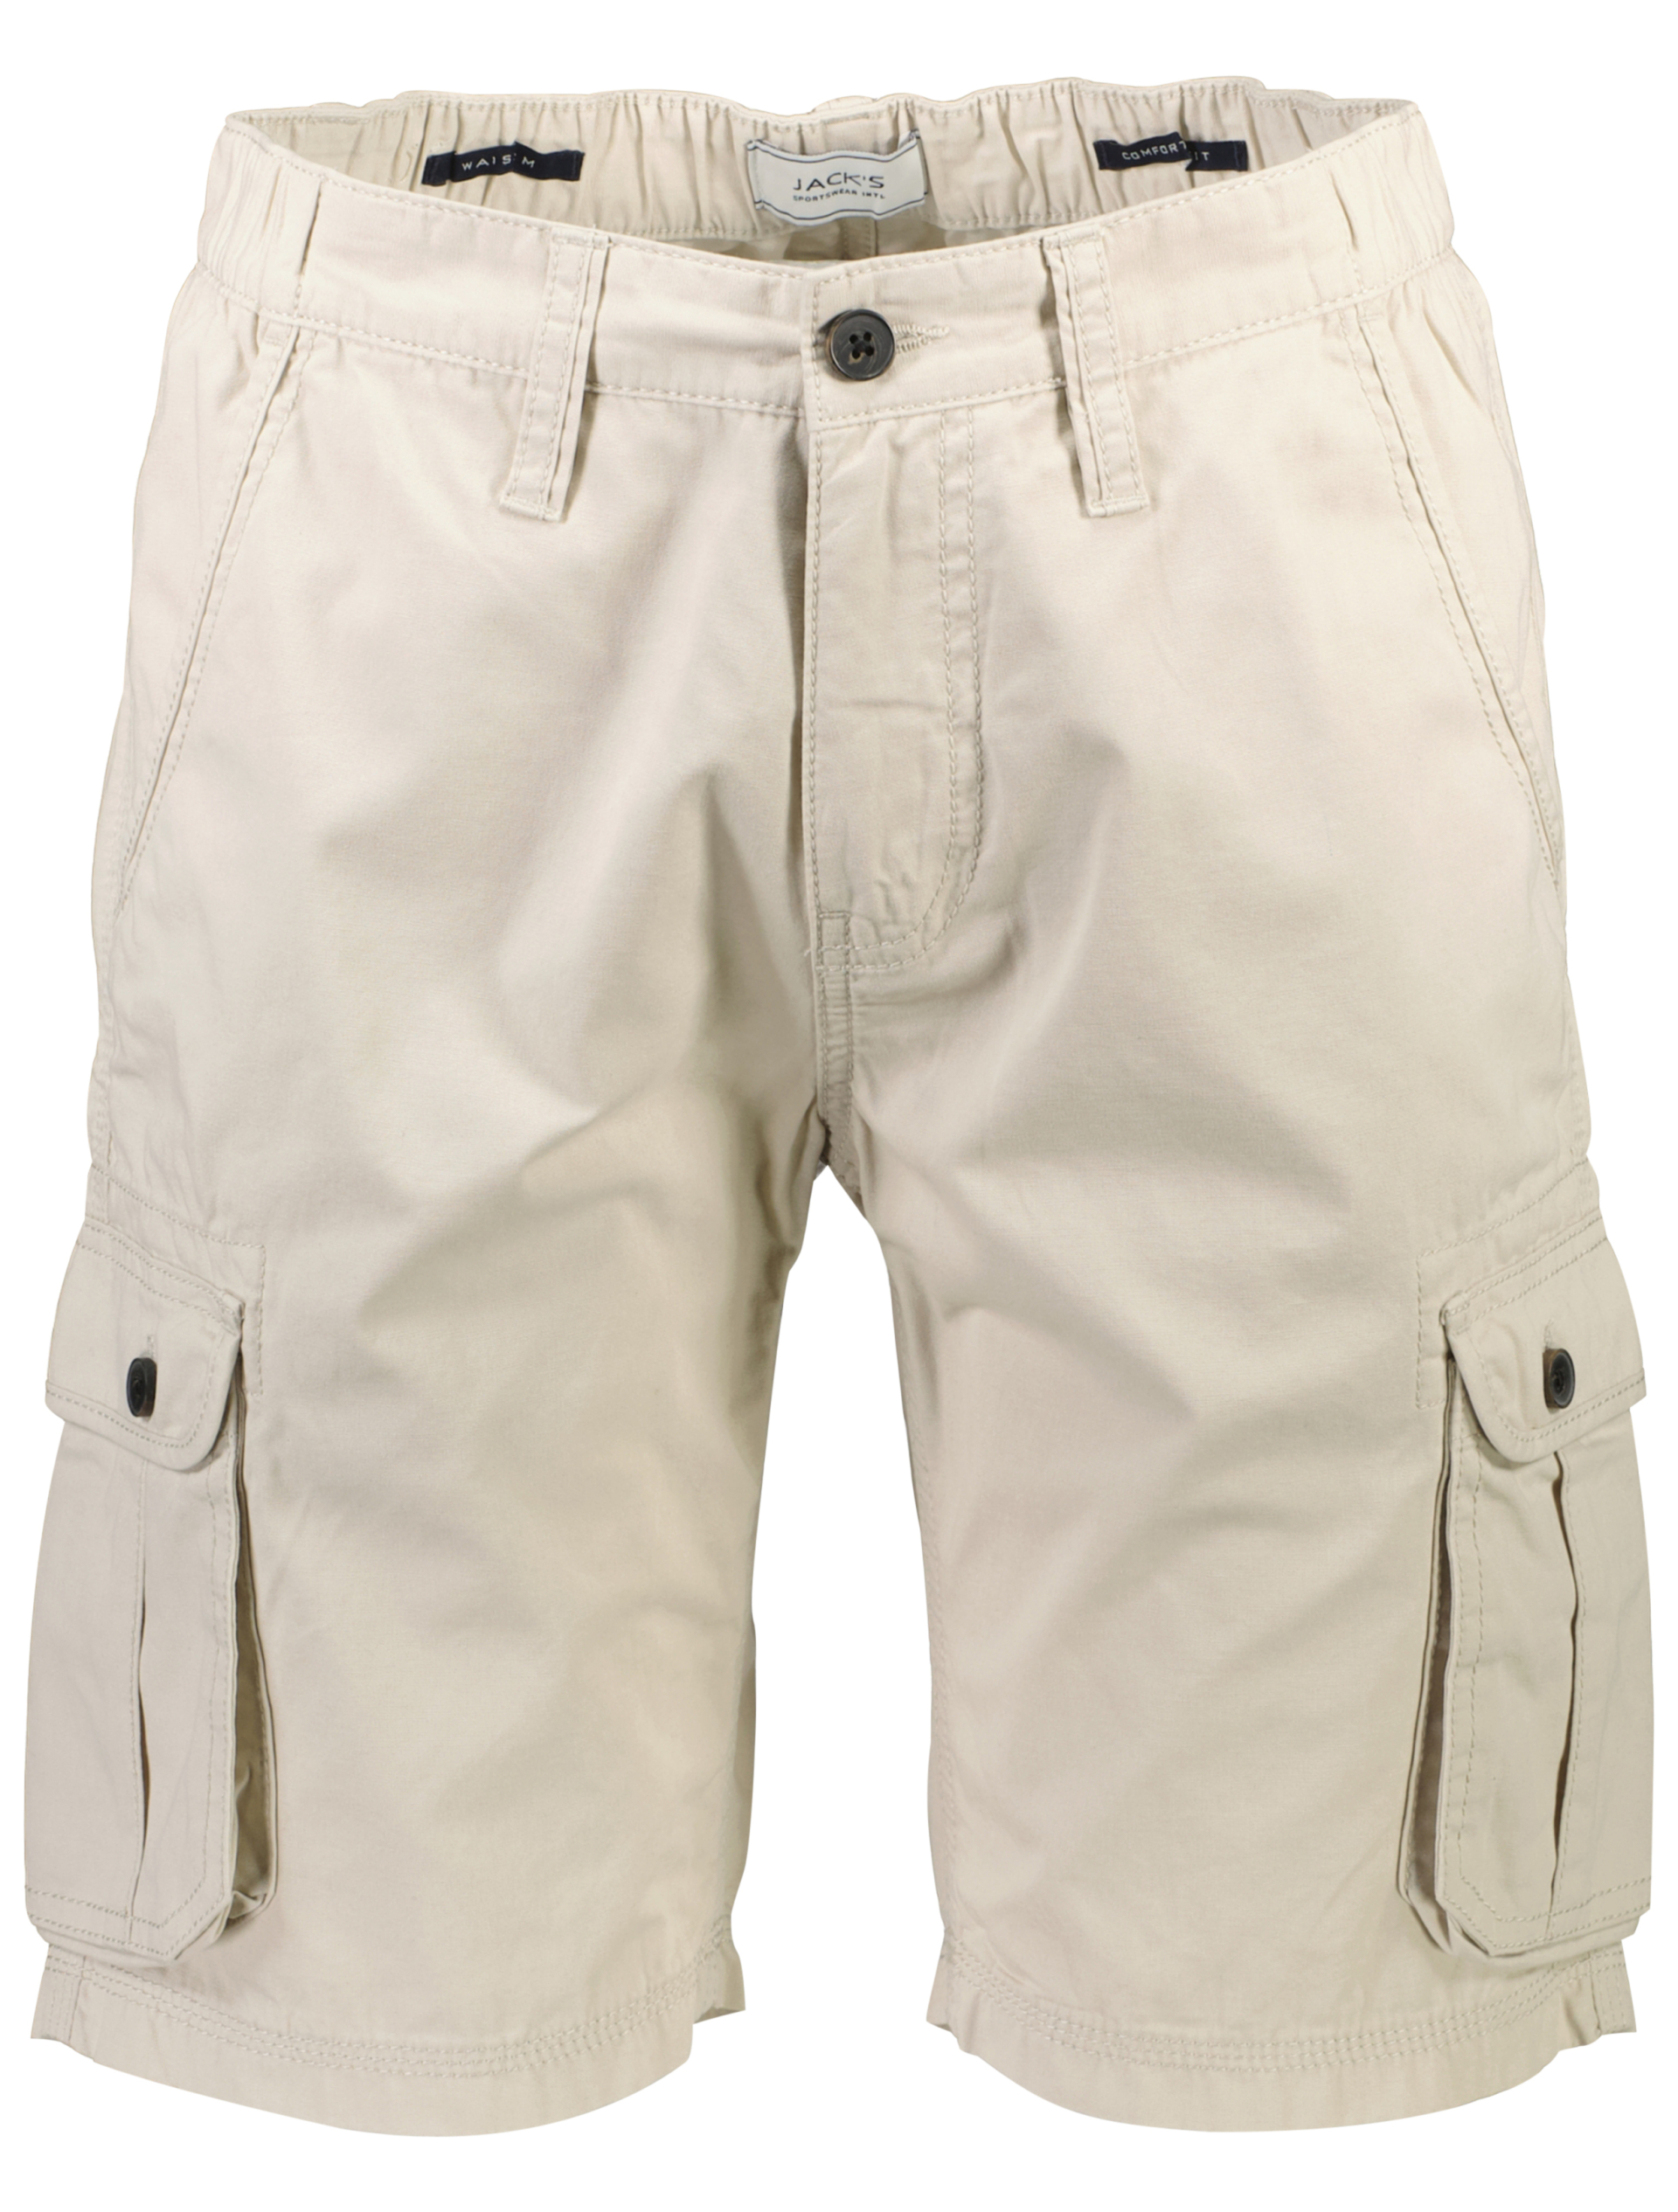 Jack's Cargo shorts sand / kit